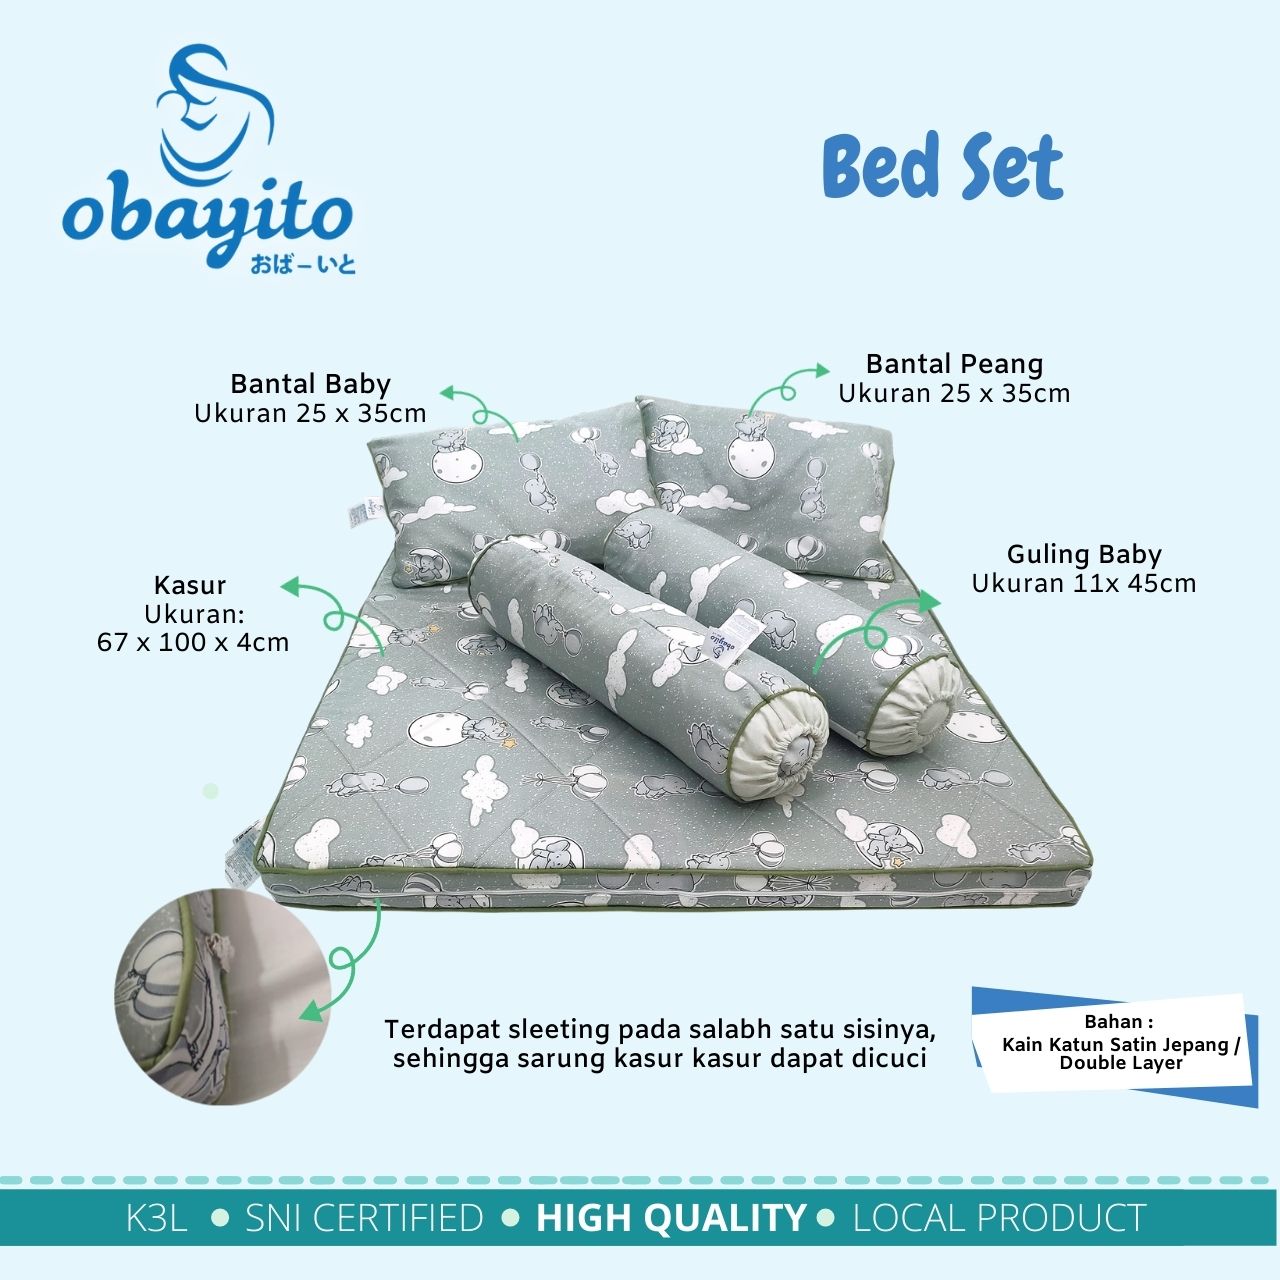 Bed Set Obayito